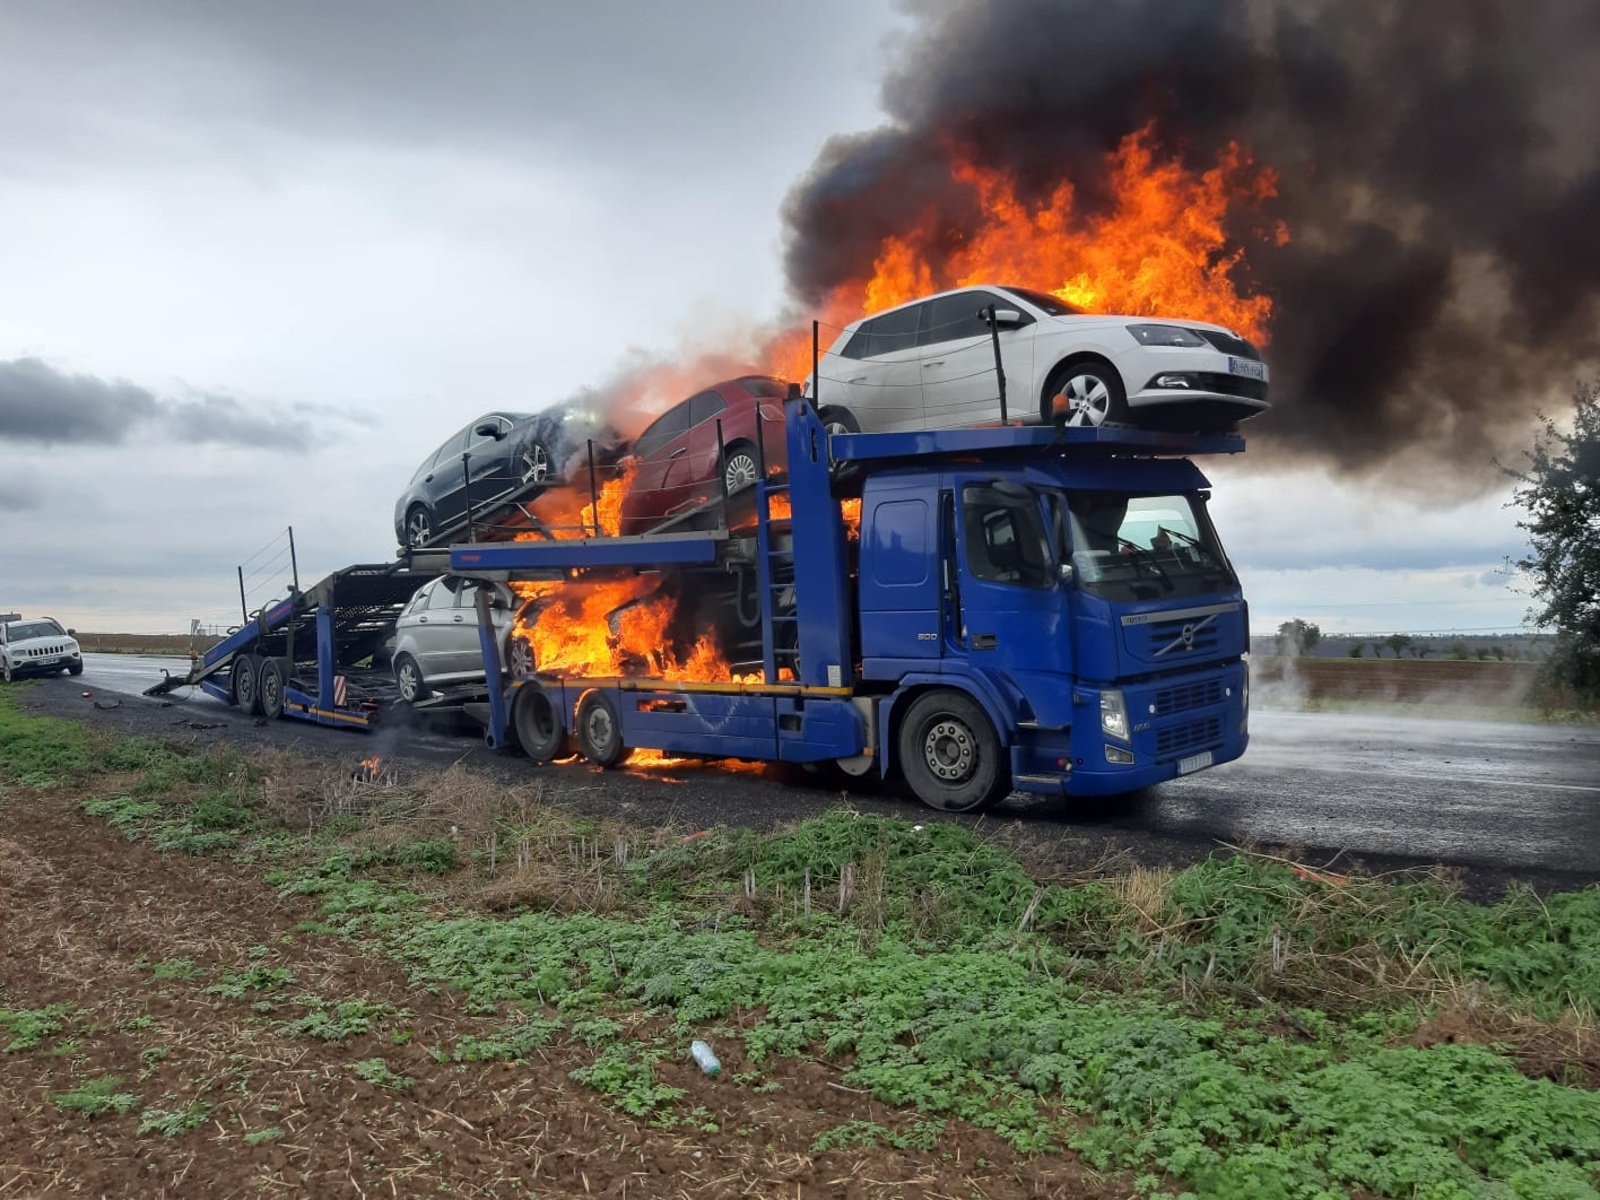 006-Požár soupravy s přepravovanými osobními vozidly.jpg